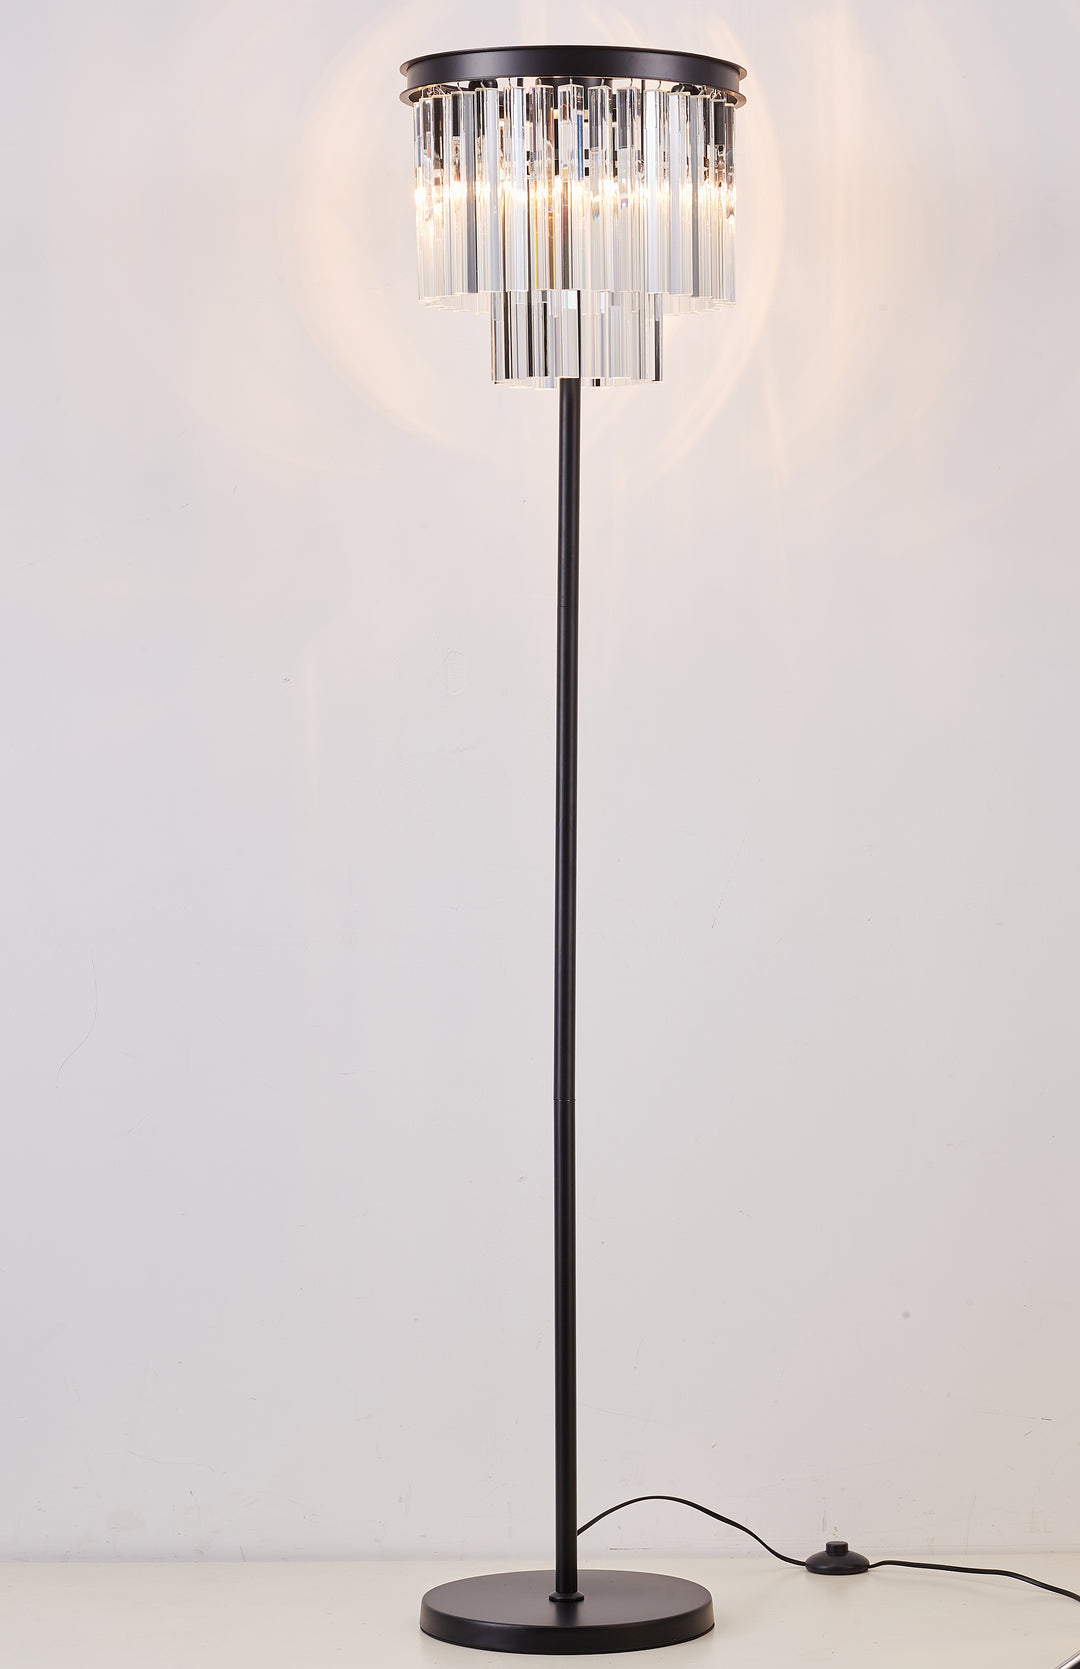 Seville floor lamp